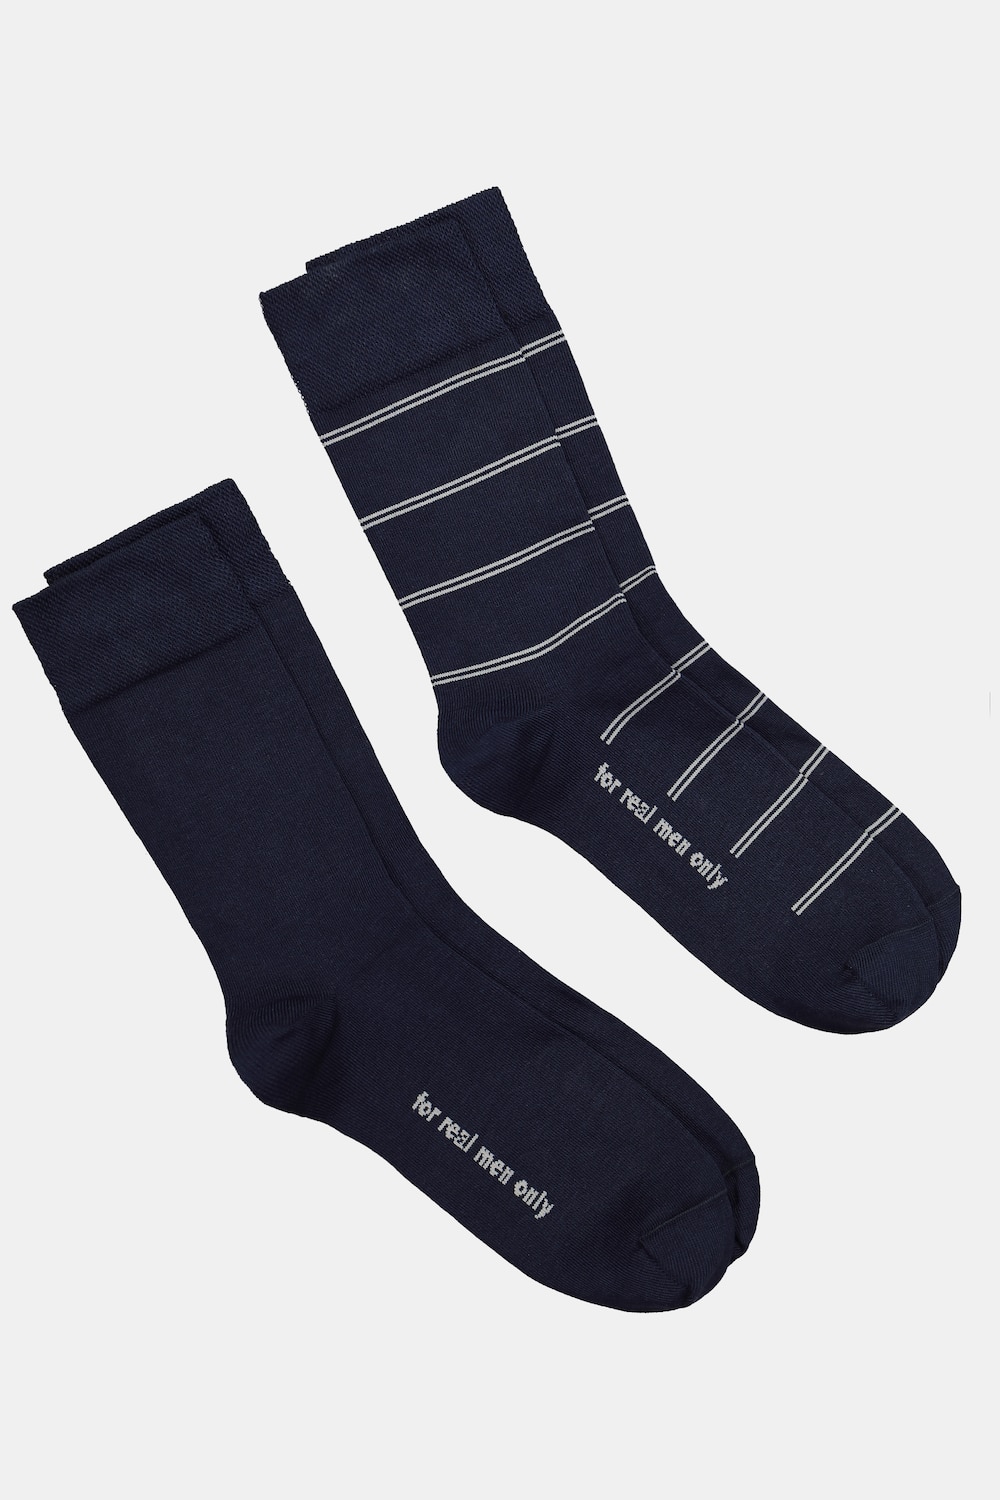 Große Größen JP1880 Socken, Herren, blau, Größe: 43-46, Baumwolle/Synthetische Fasern, JP1880 von JP1880